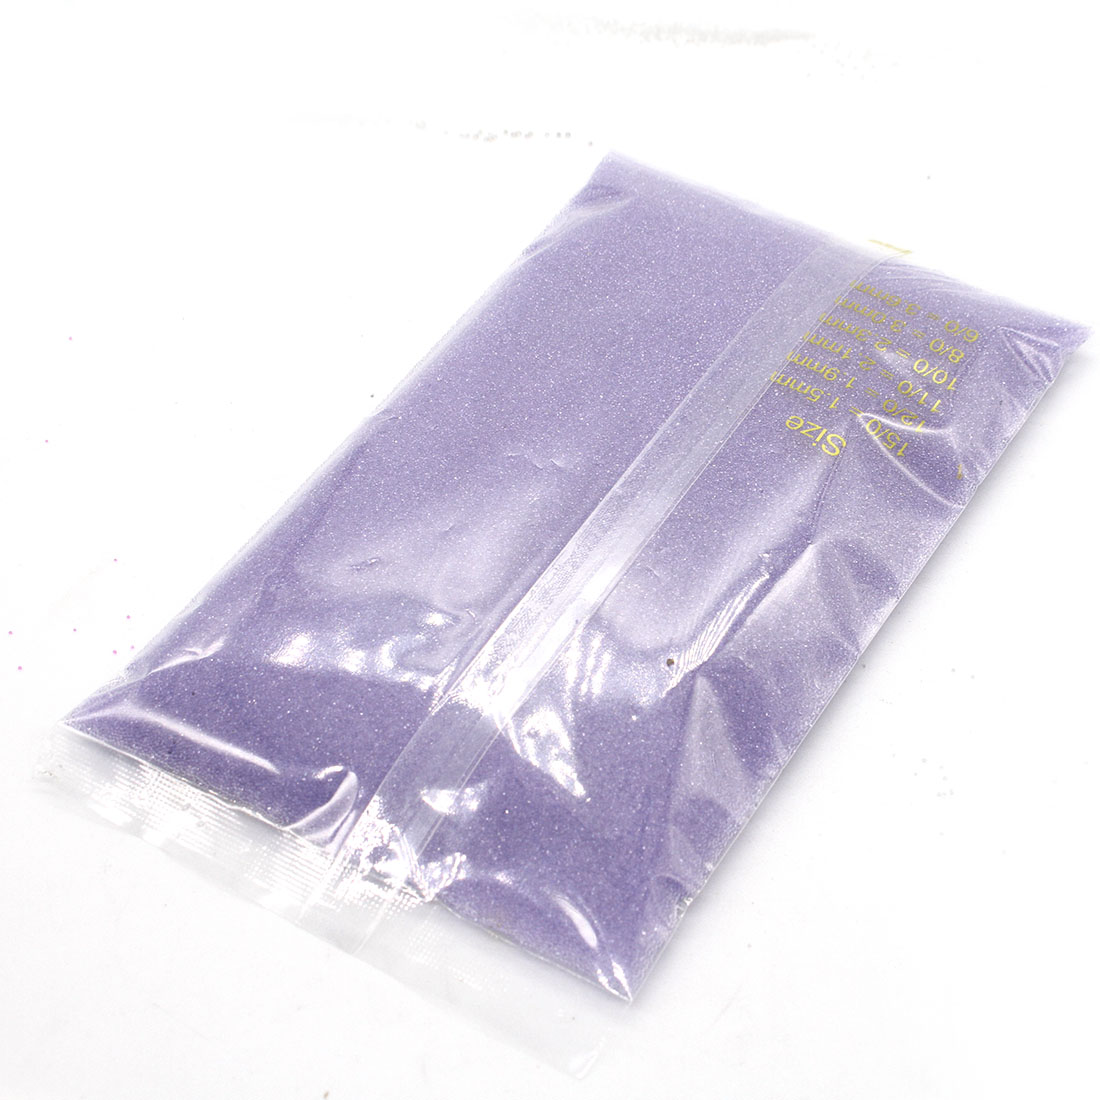 Dark purple, 0.6 to 0.8 mm